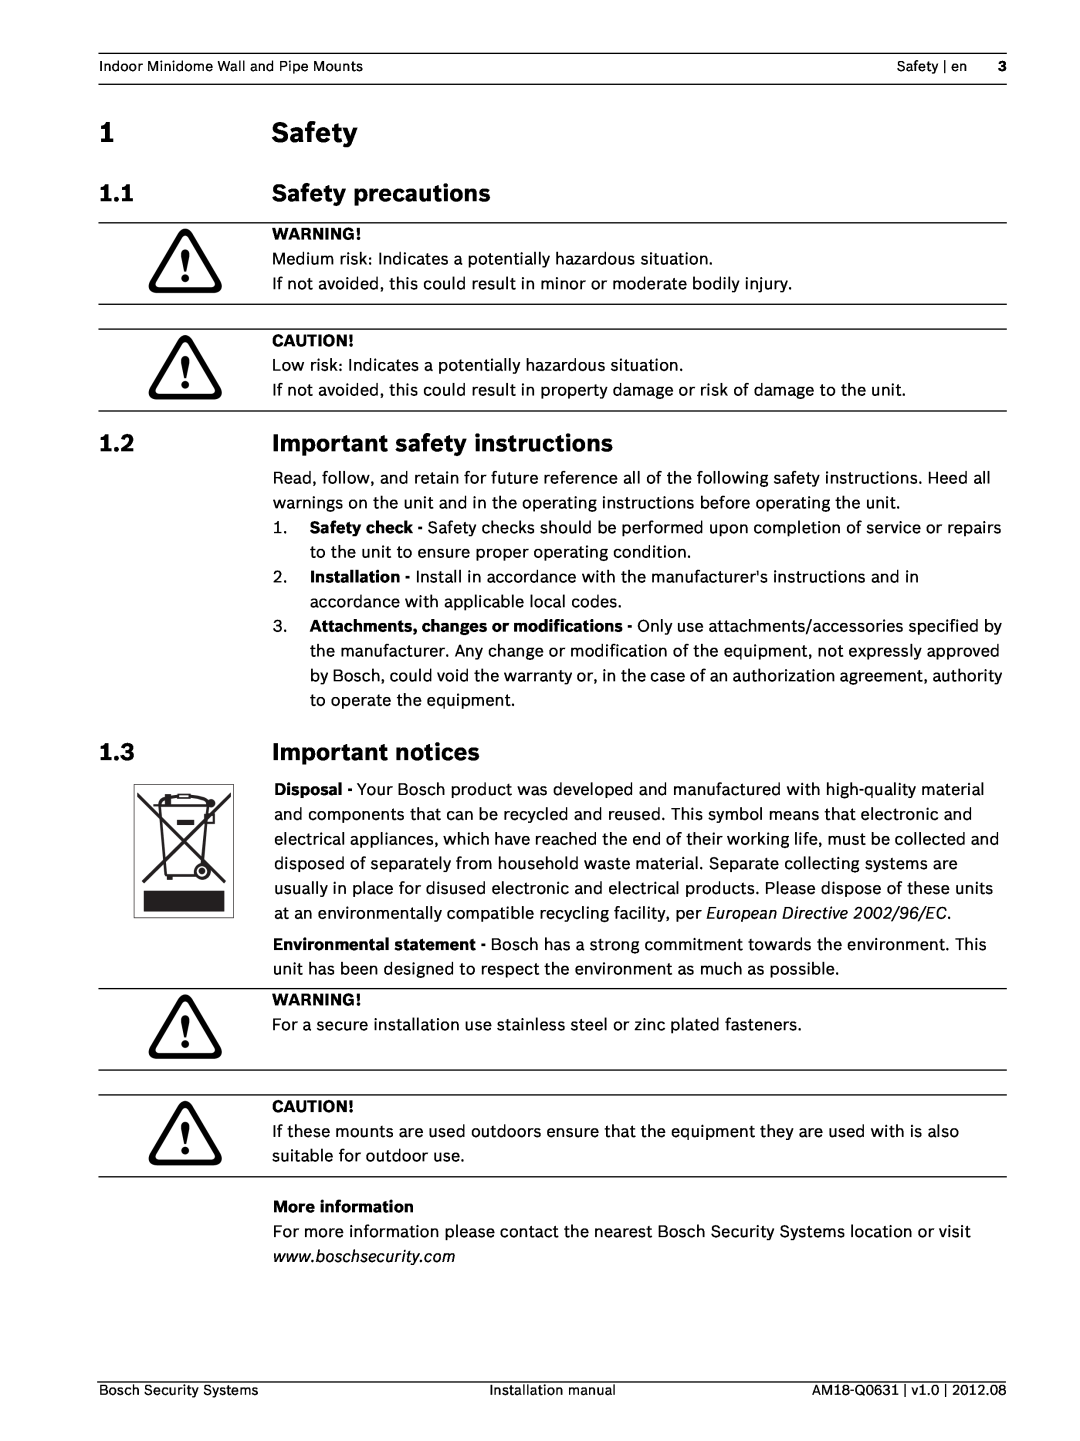 Bosch Appliances VDA-WMT 1Safety, Safety precautions, Important safety instructions, Important notices, More information 